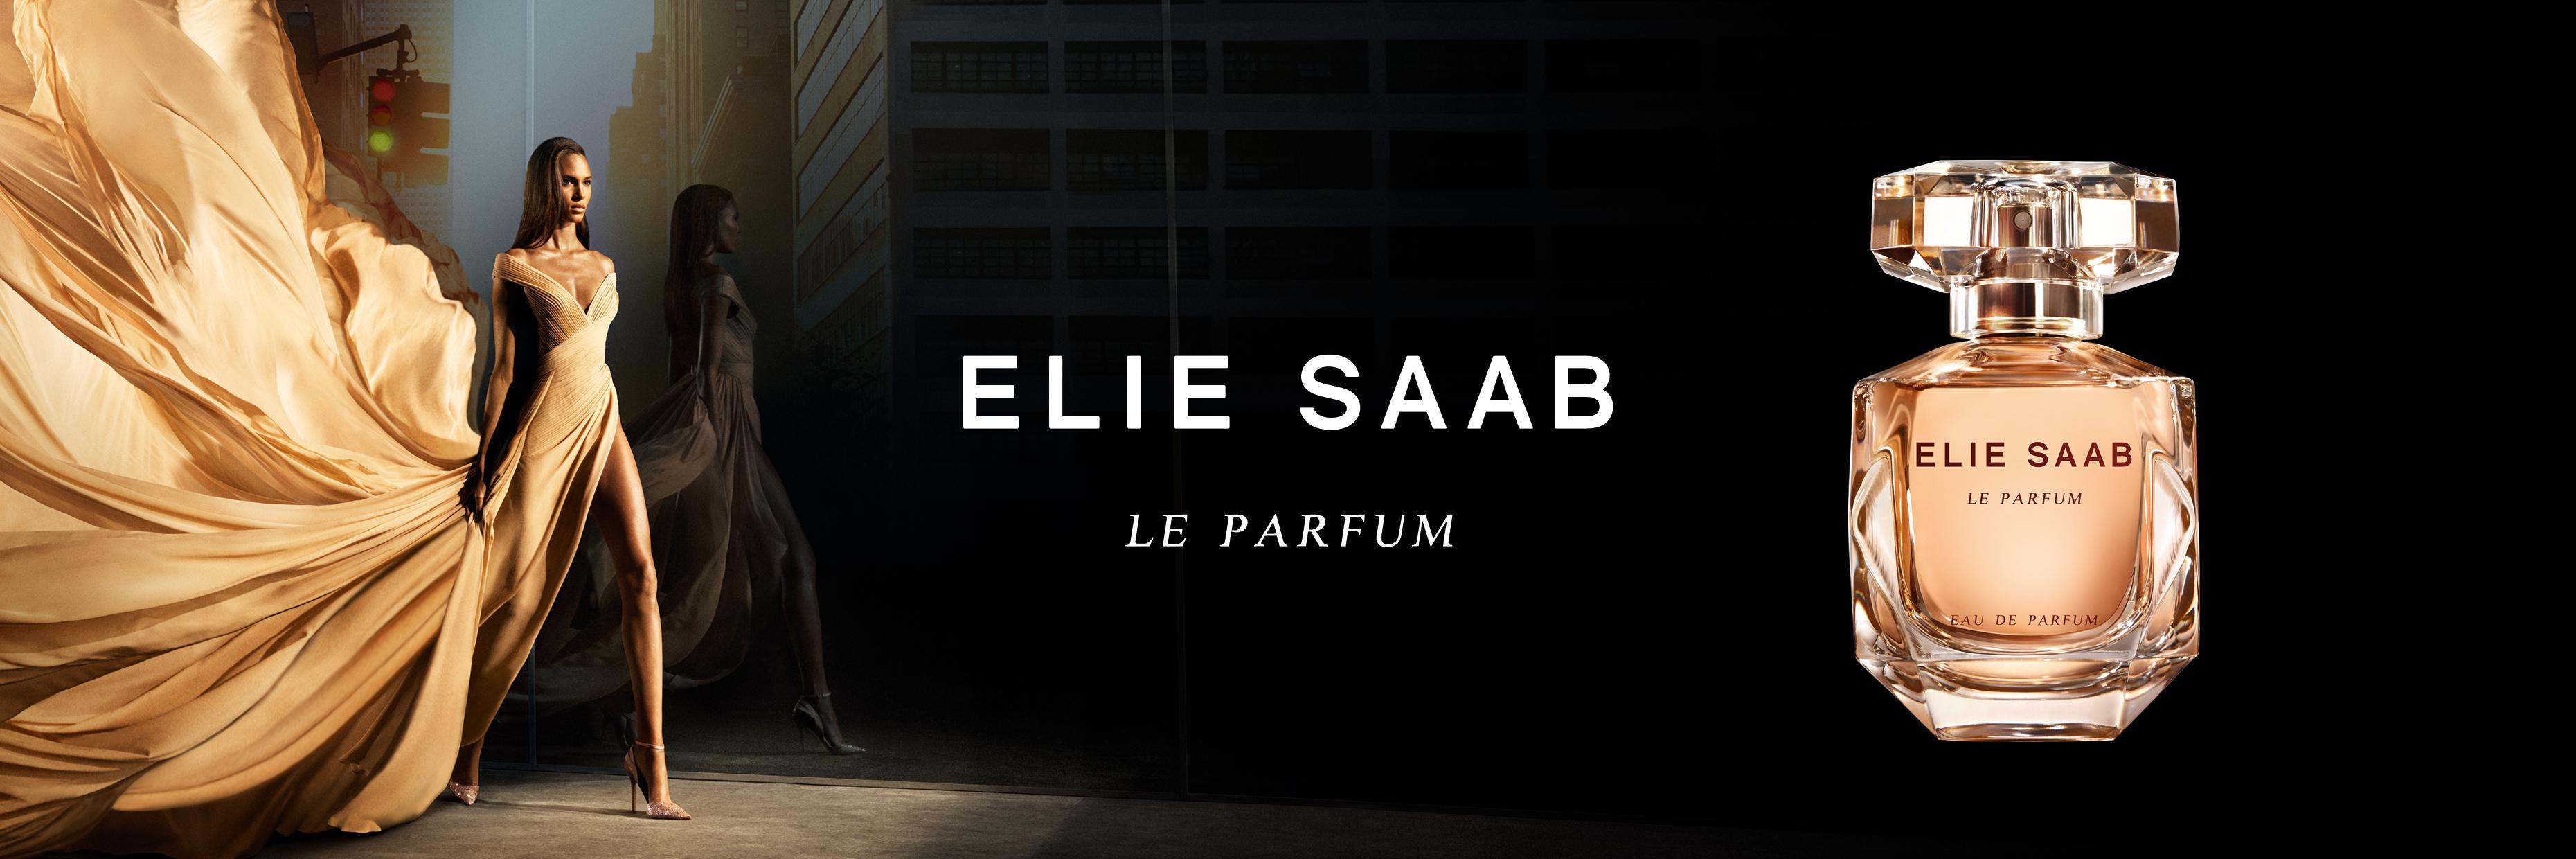 Bannière de marque de Elie Saab